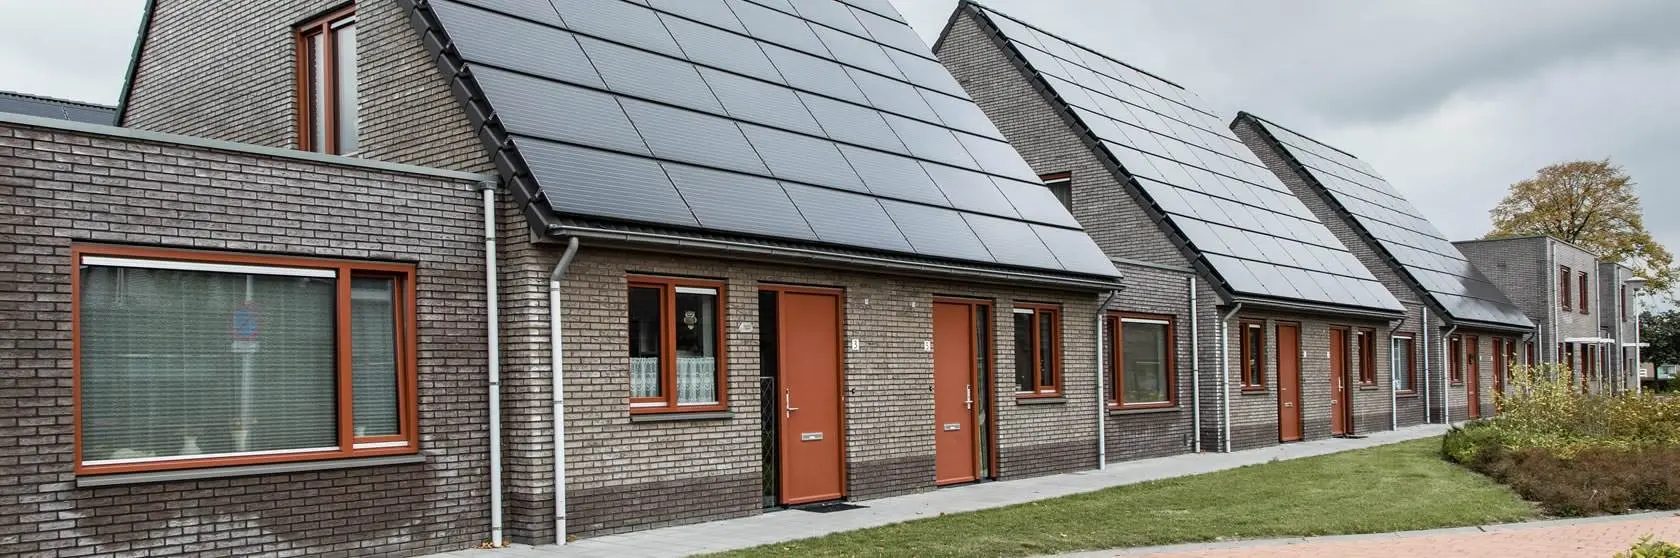 Duurzaamheidsconcepten van installatiebedrijf Mampaey actief in Almere en omgeving